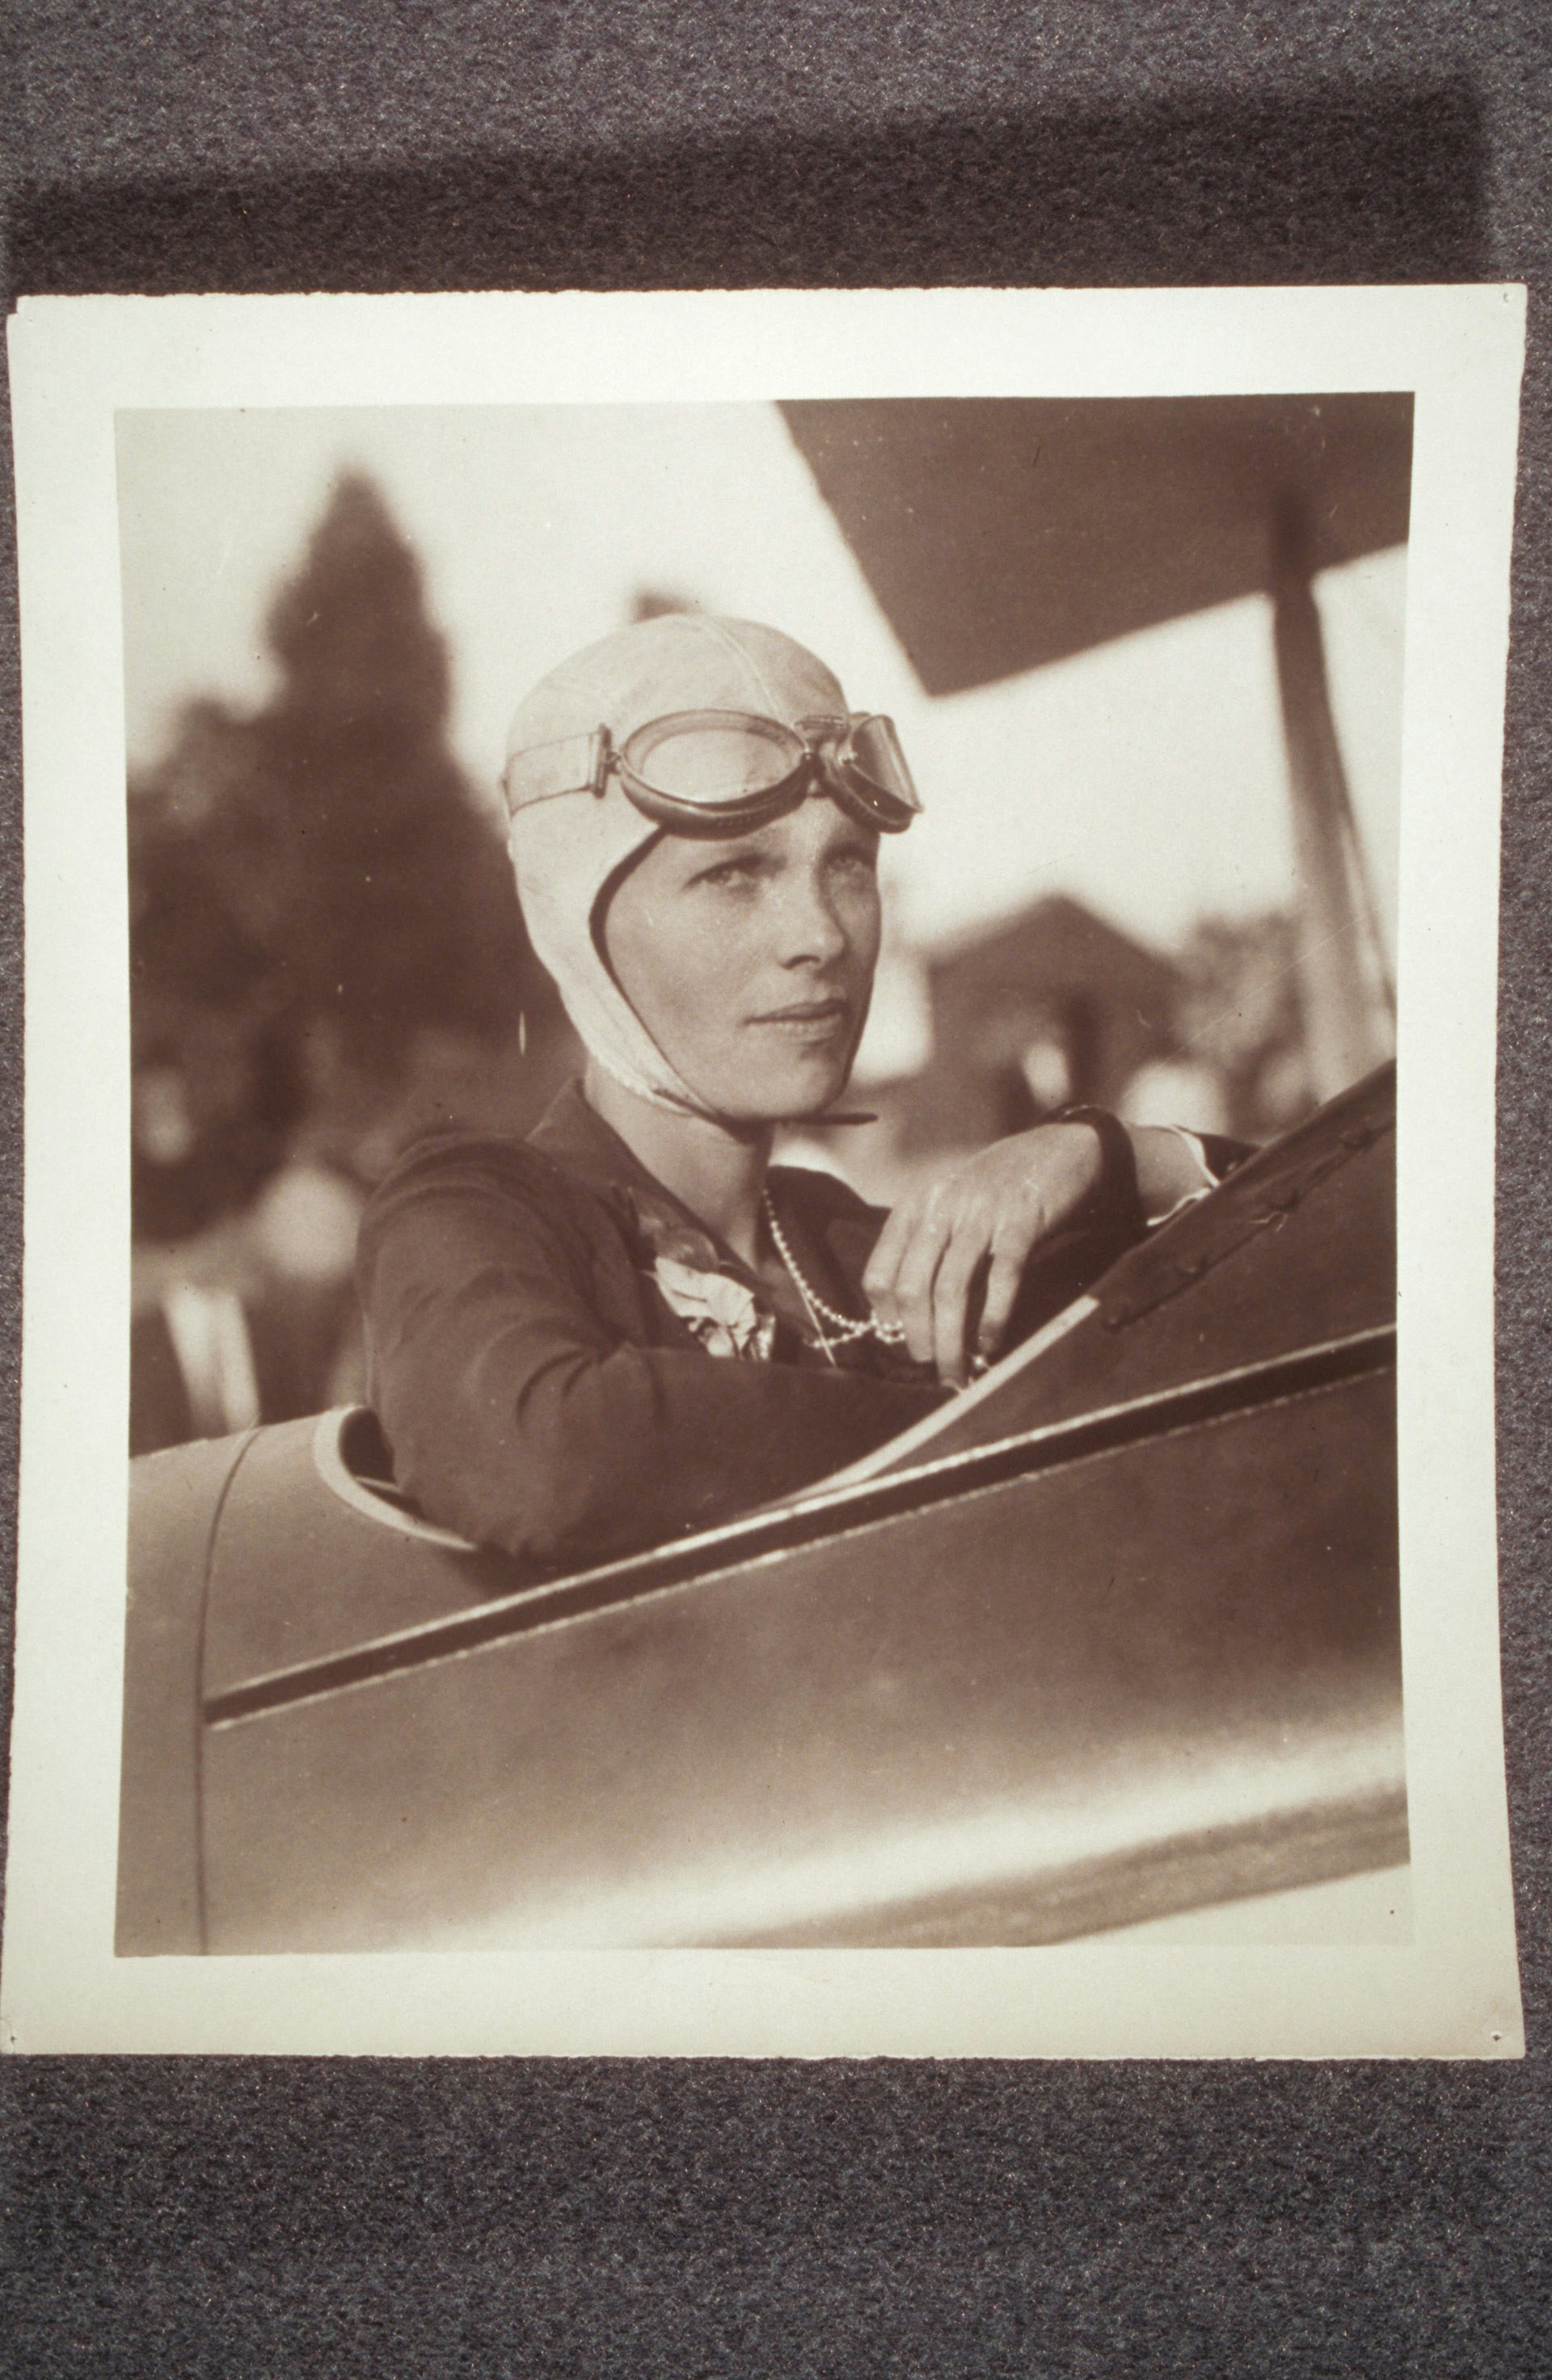 Amelia Earhart, in plane, wearing flight helmet and pearls